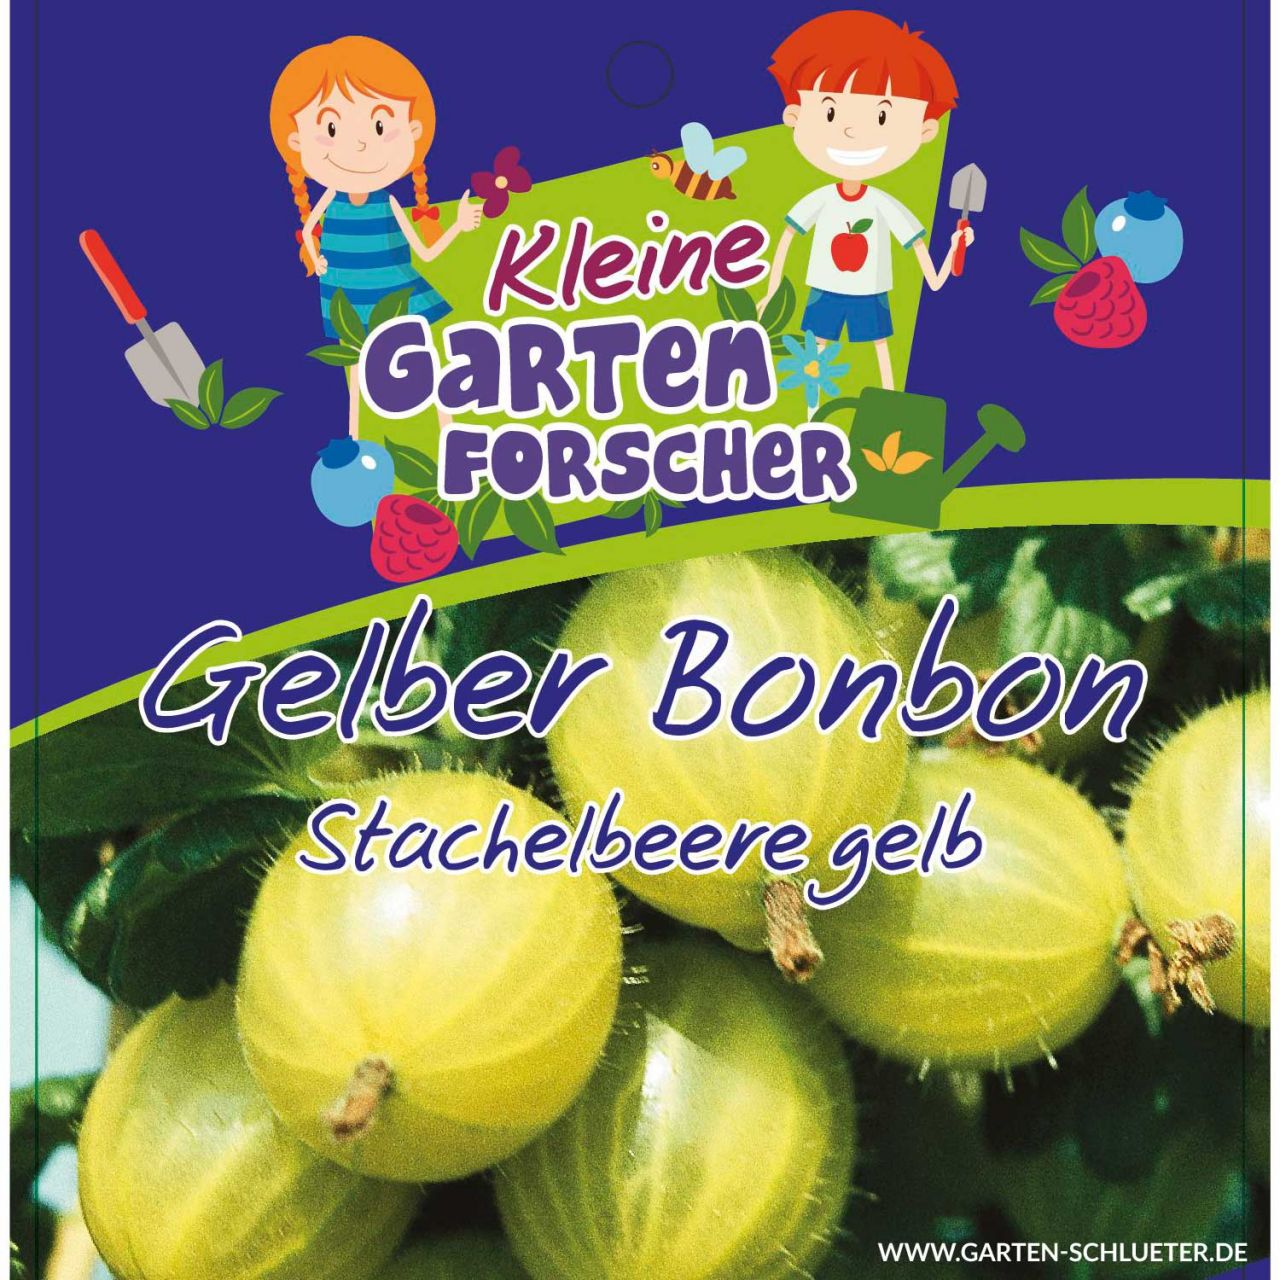 Gelbe Stachelbeere 'Gelber Bonbon'  - Kleine Gartenforscher von Kleine Gartenforscher